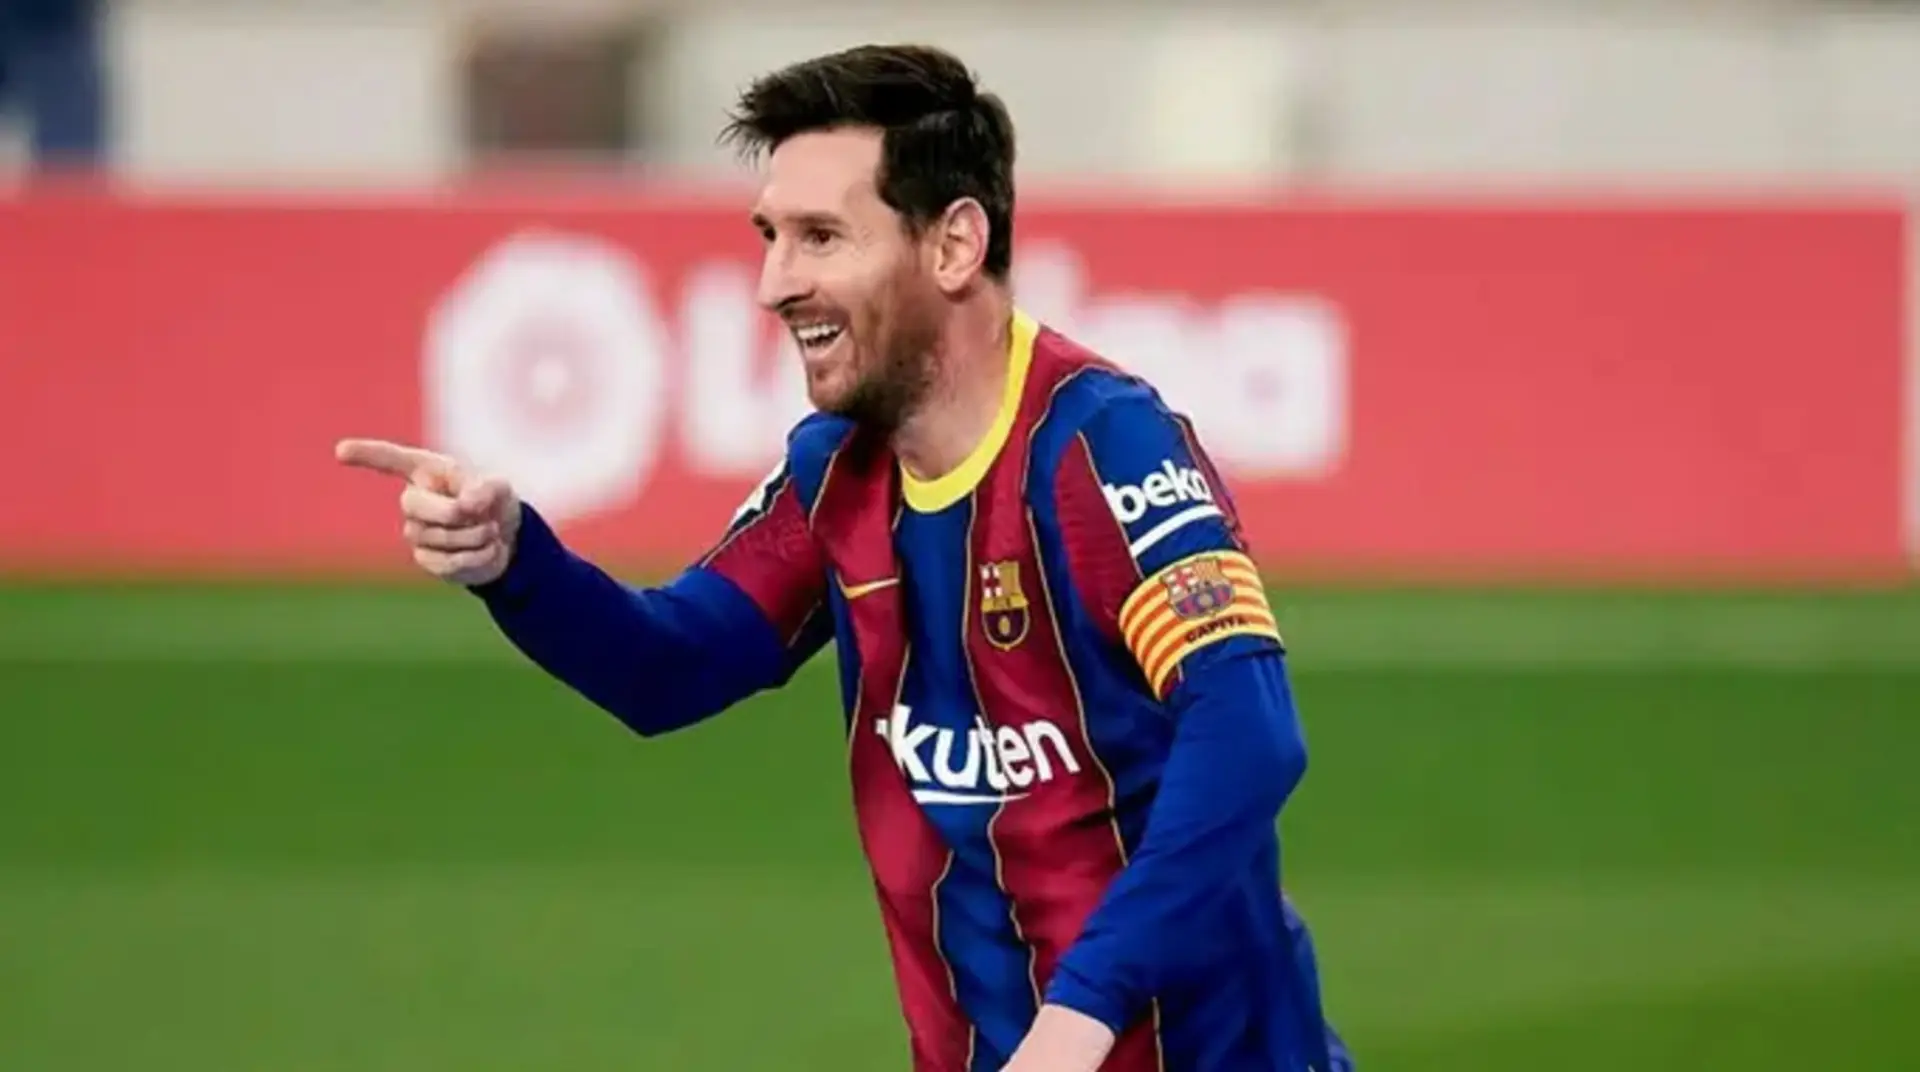 ÚLTIMA HORA: El Barcelona acuerda en principio un contrato de 5 años con Messi, revelados los detalles